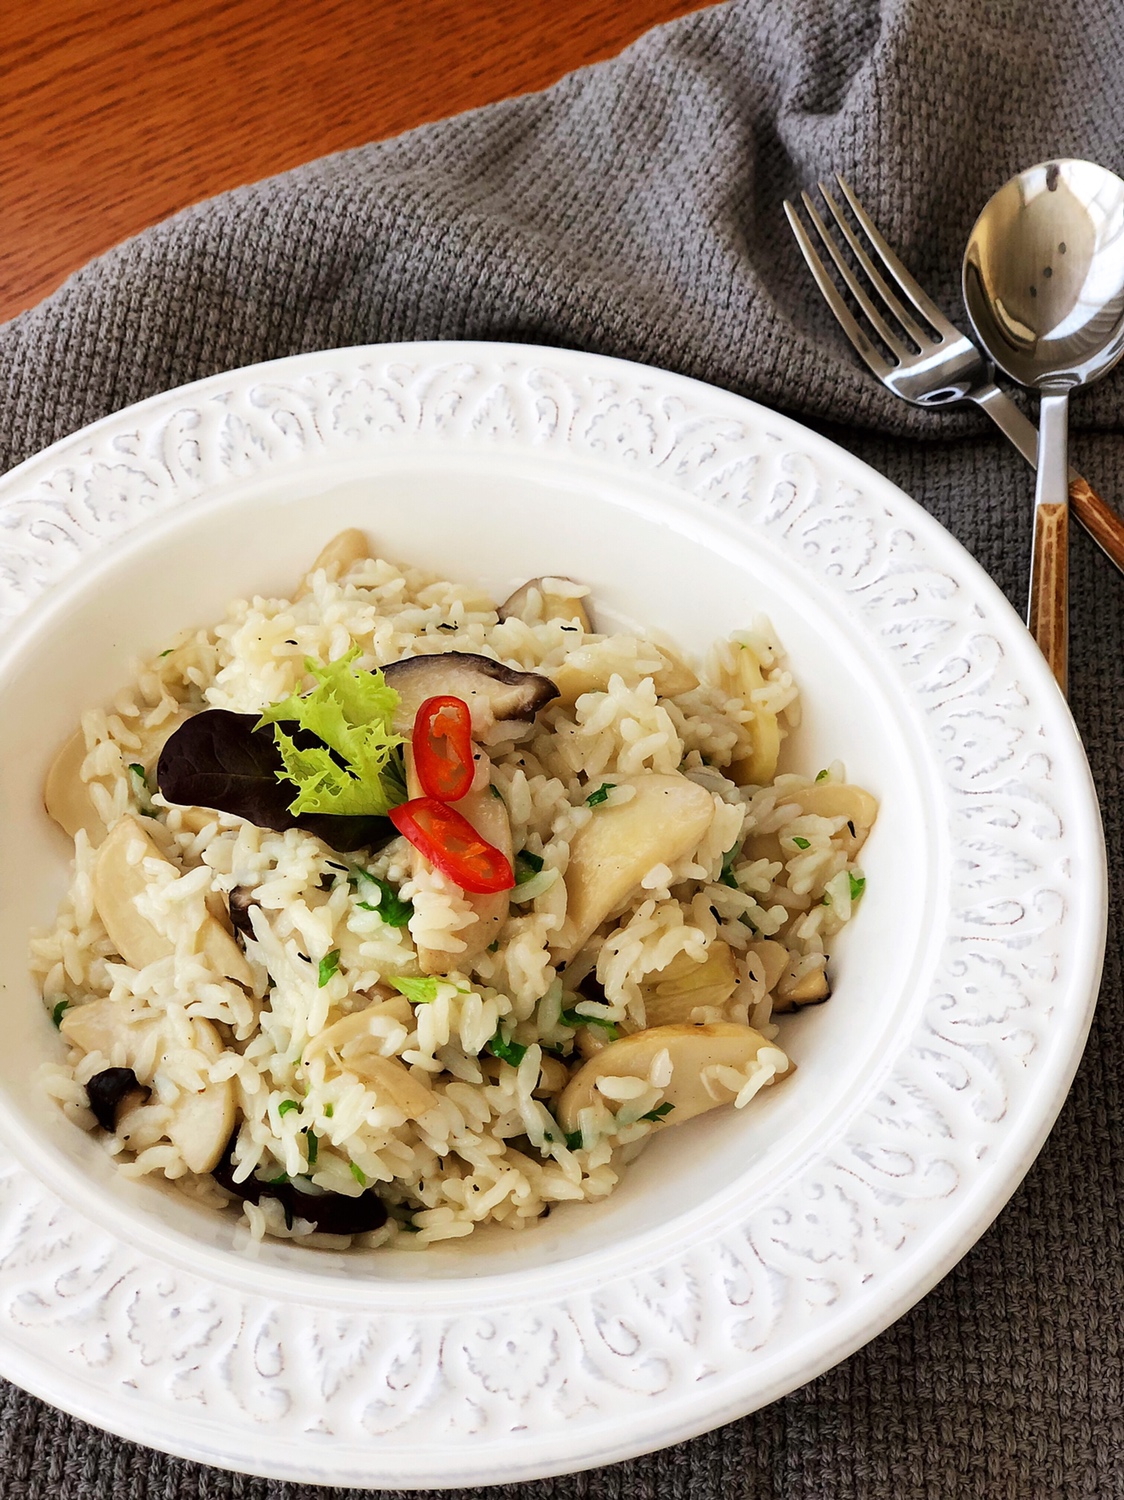 拯救剩米饭—骨汤蘑菇烩饭的做法